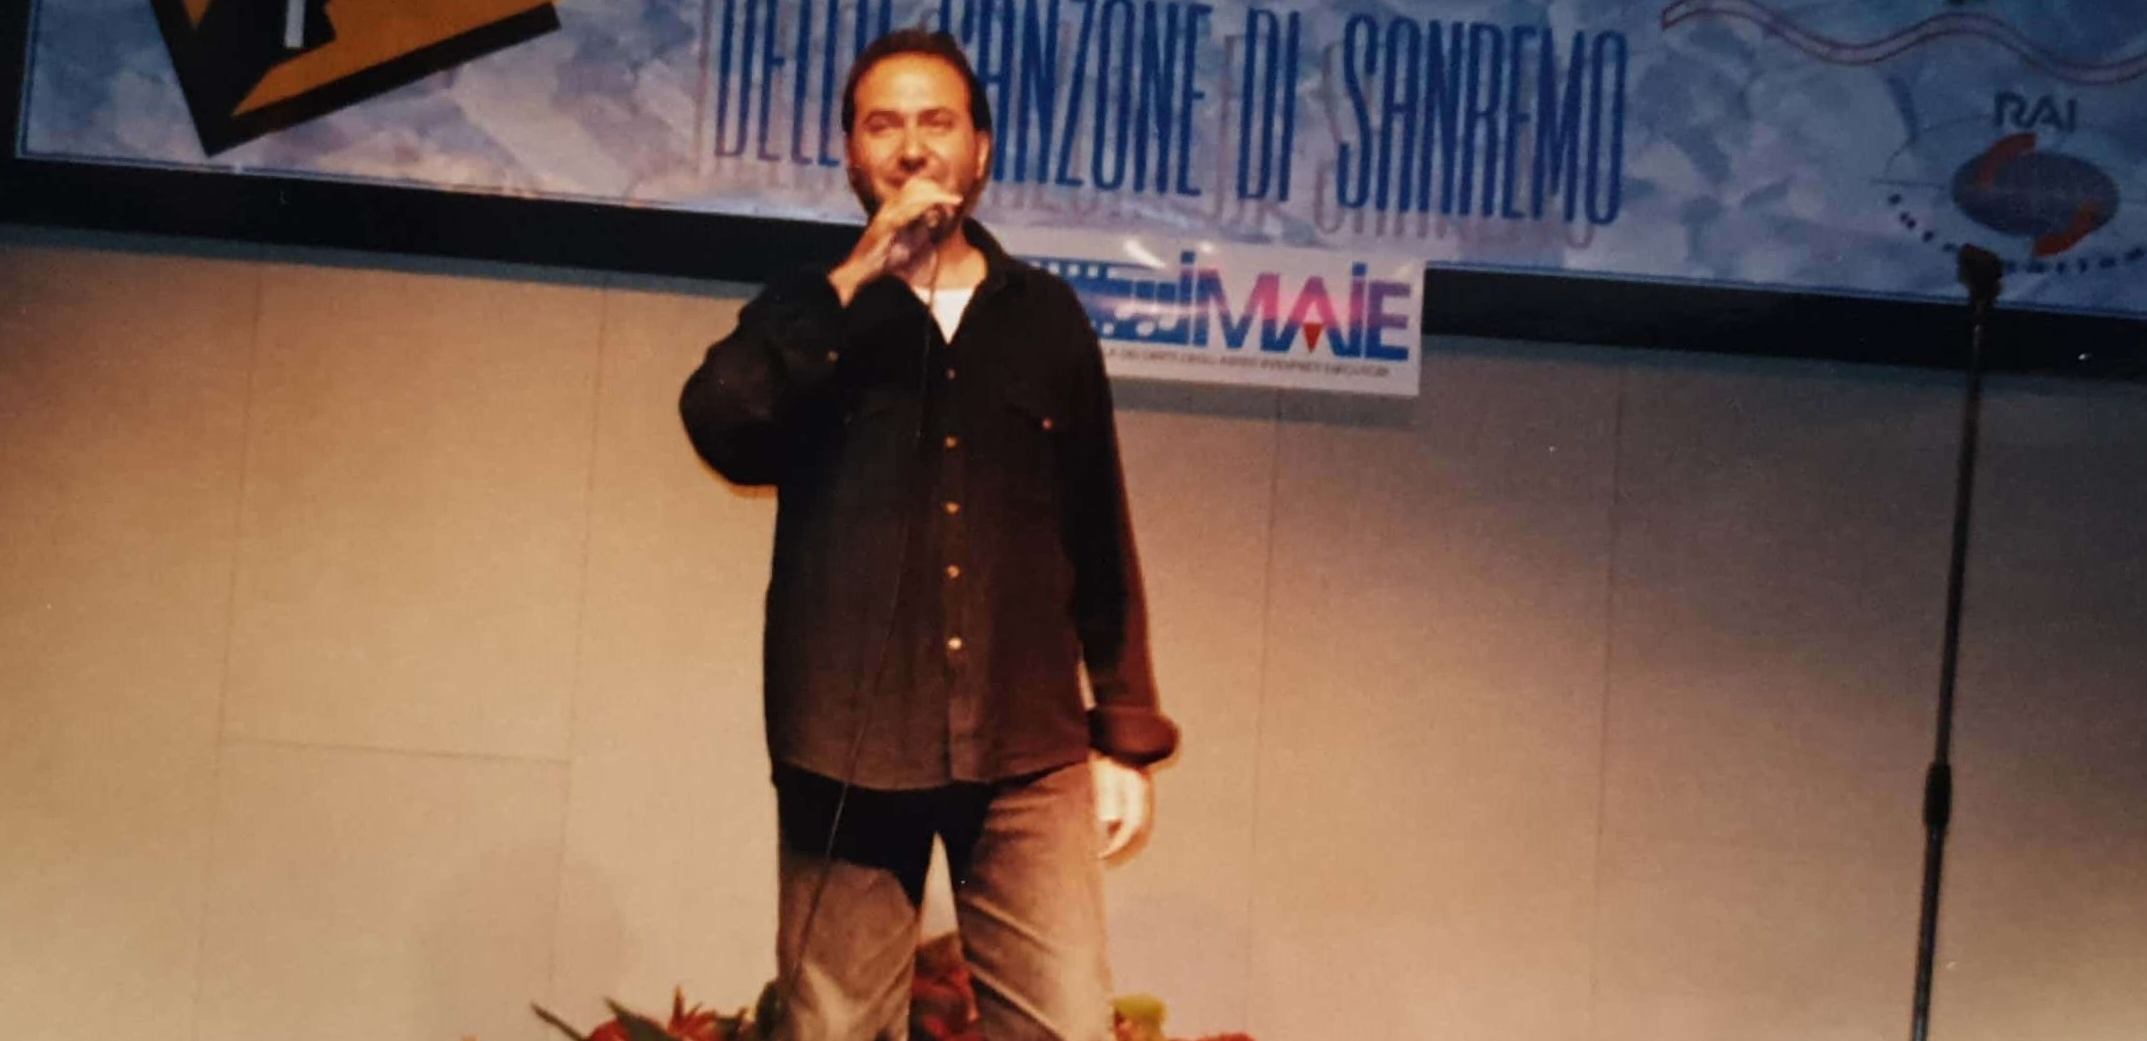 Adriano Formoso a Sanremo '97